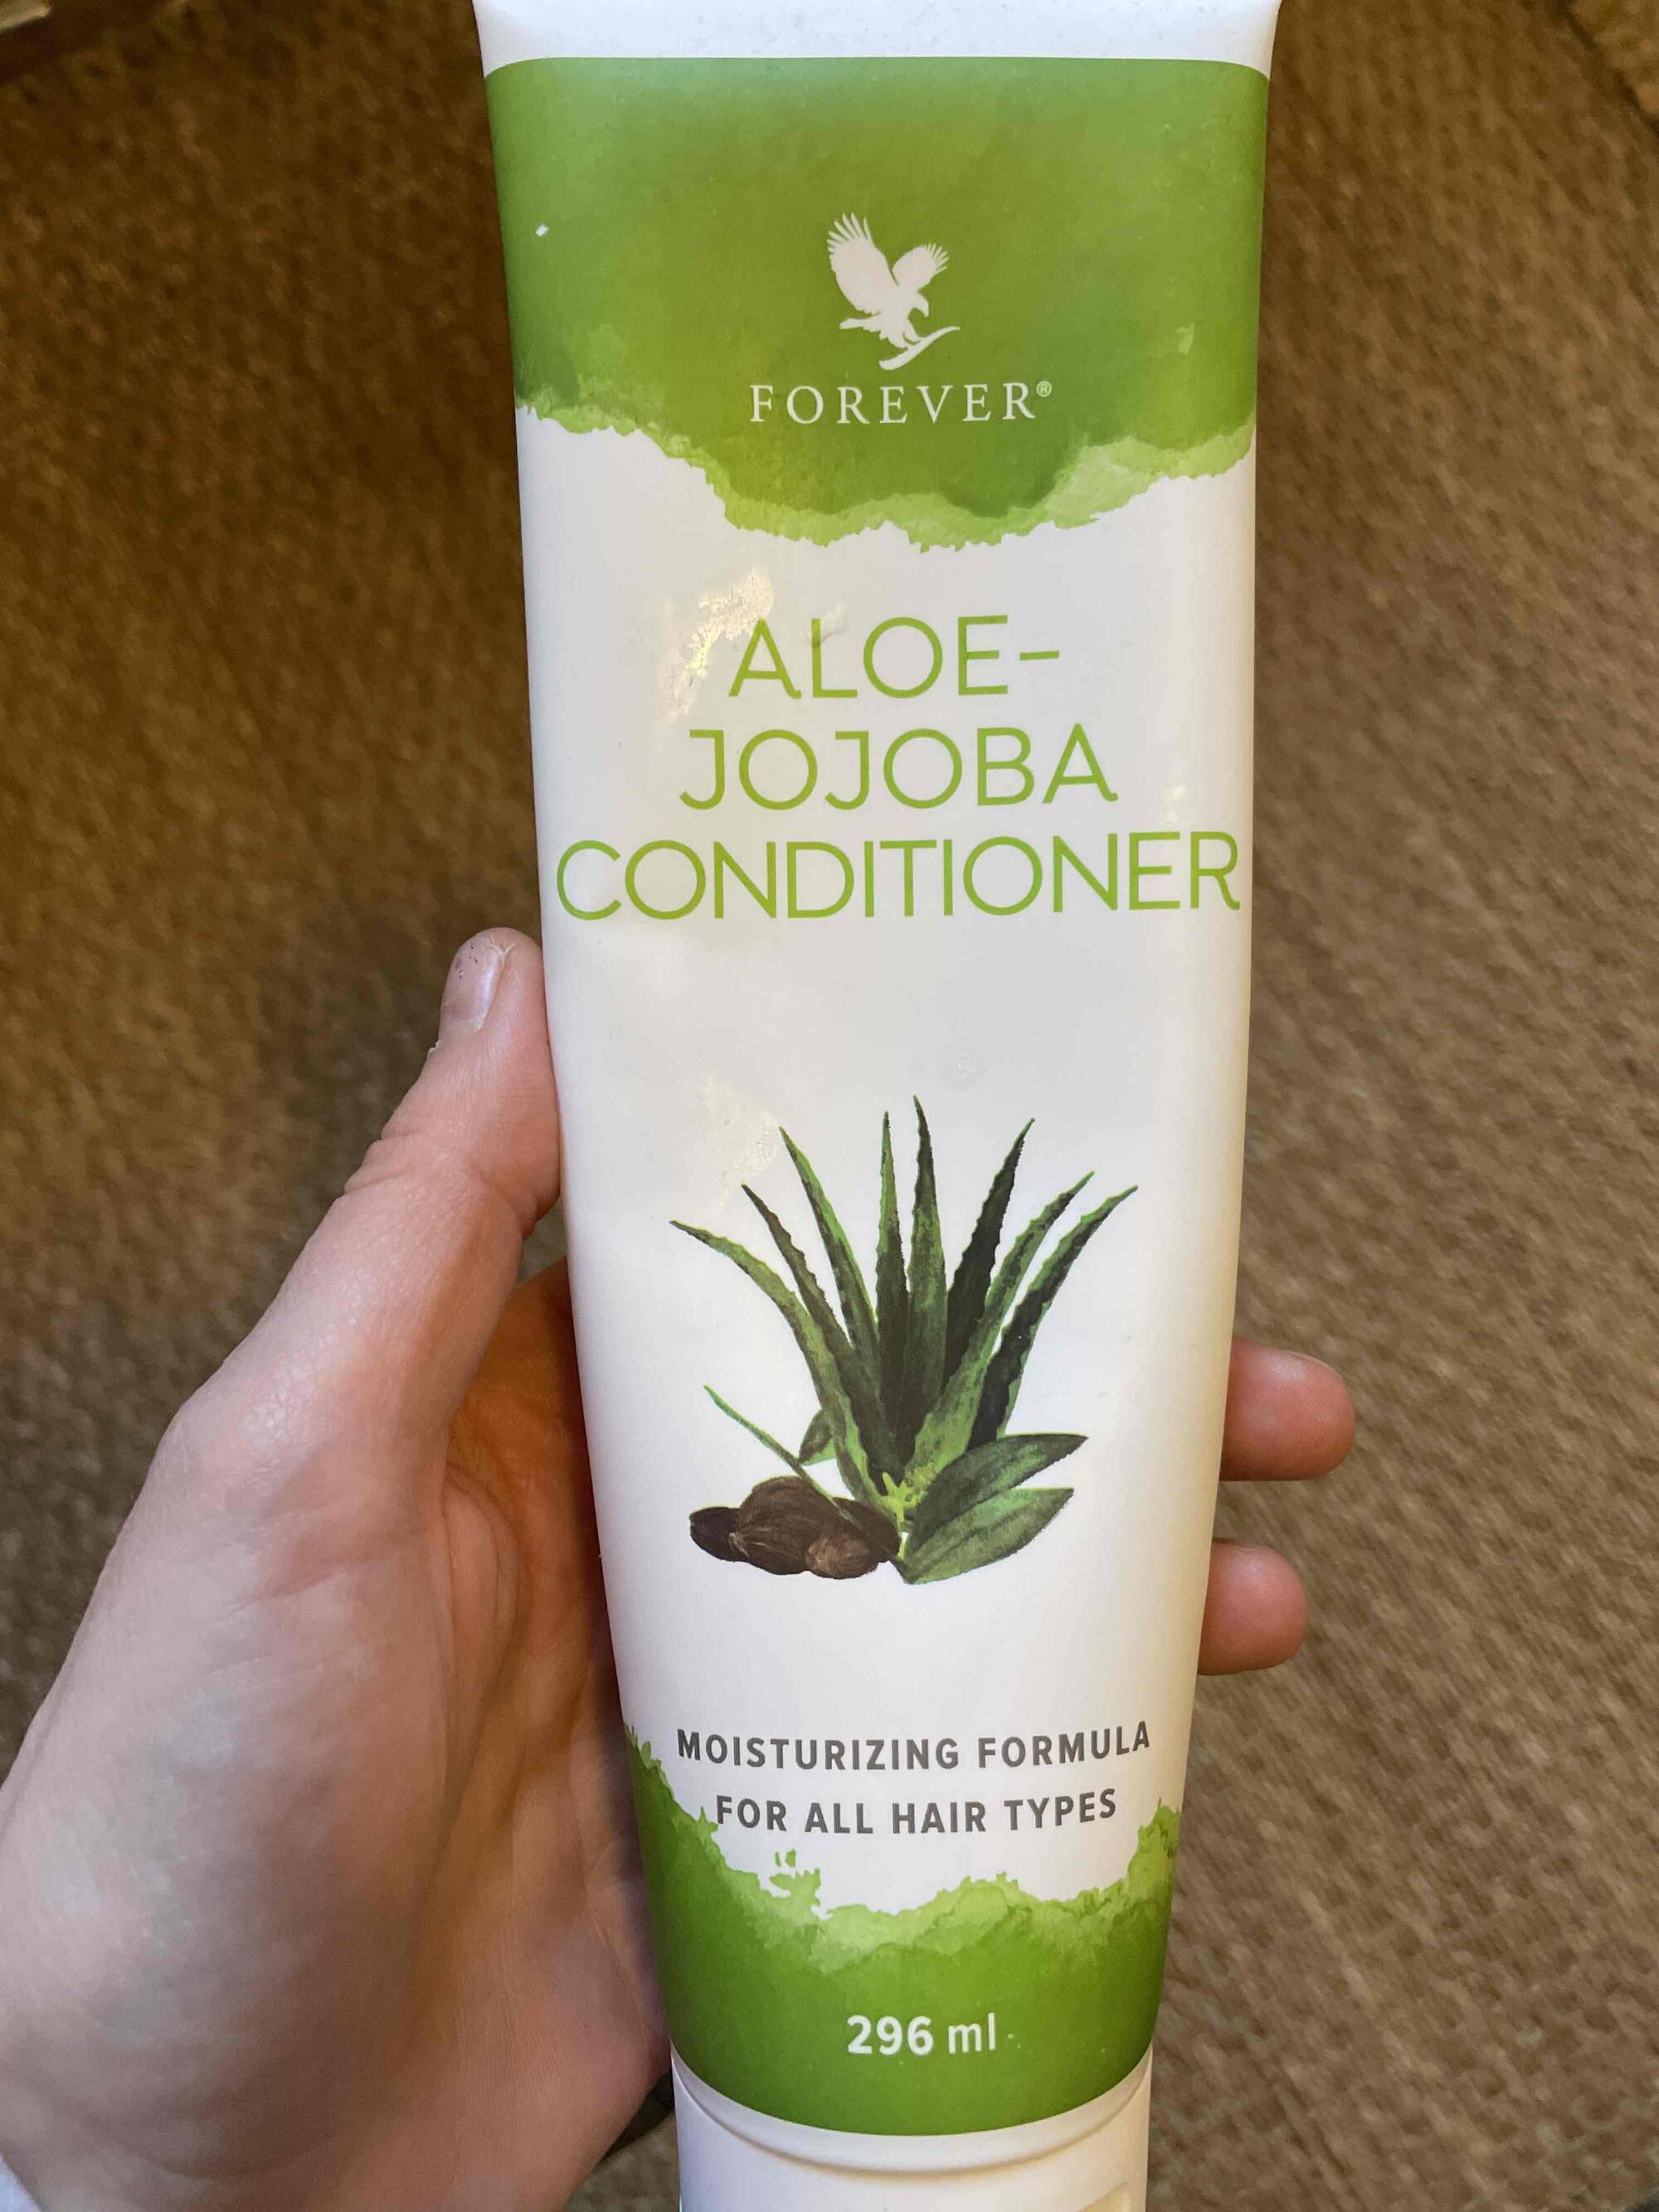 FOREVER - Aloe jojoba conditioner for all hair types